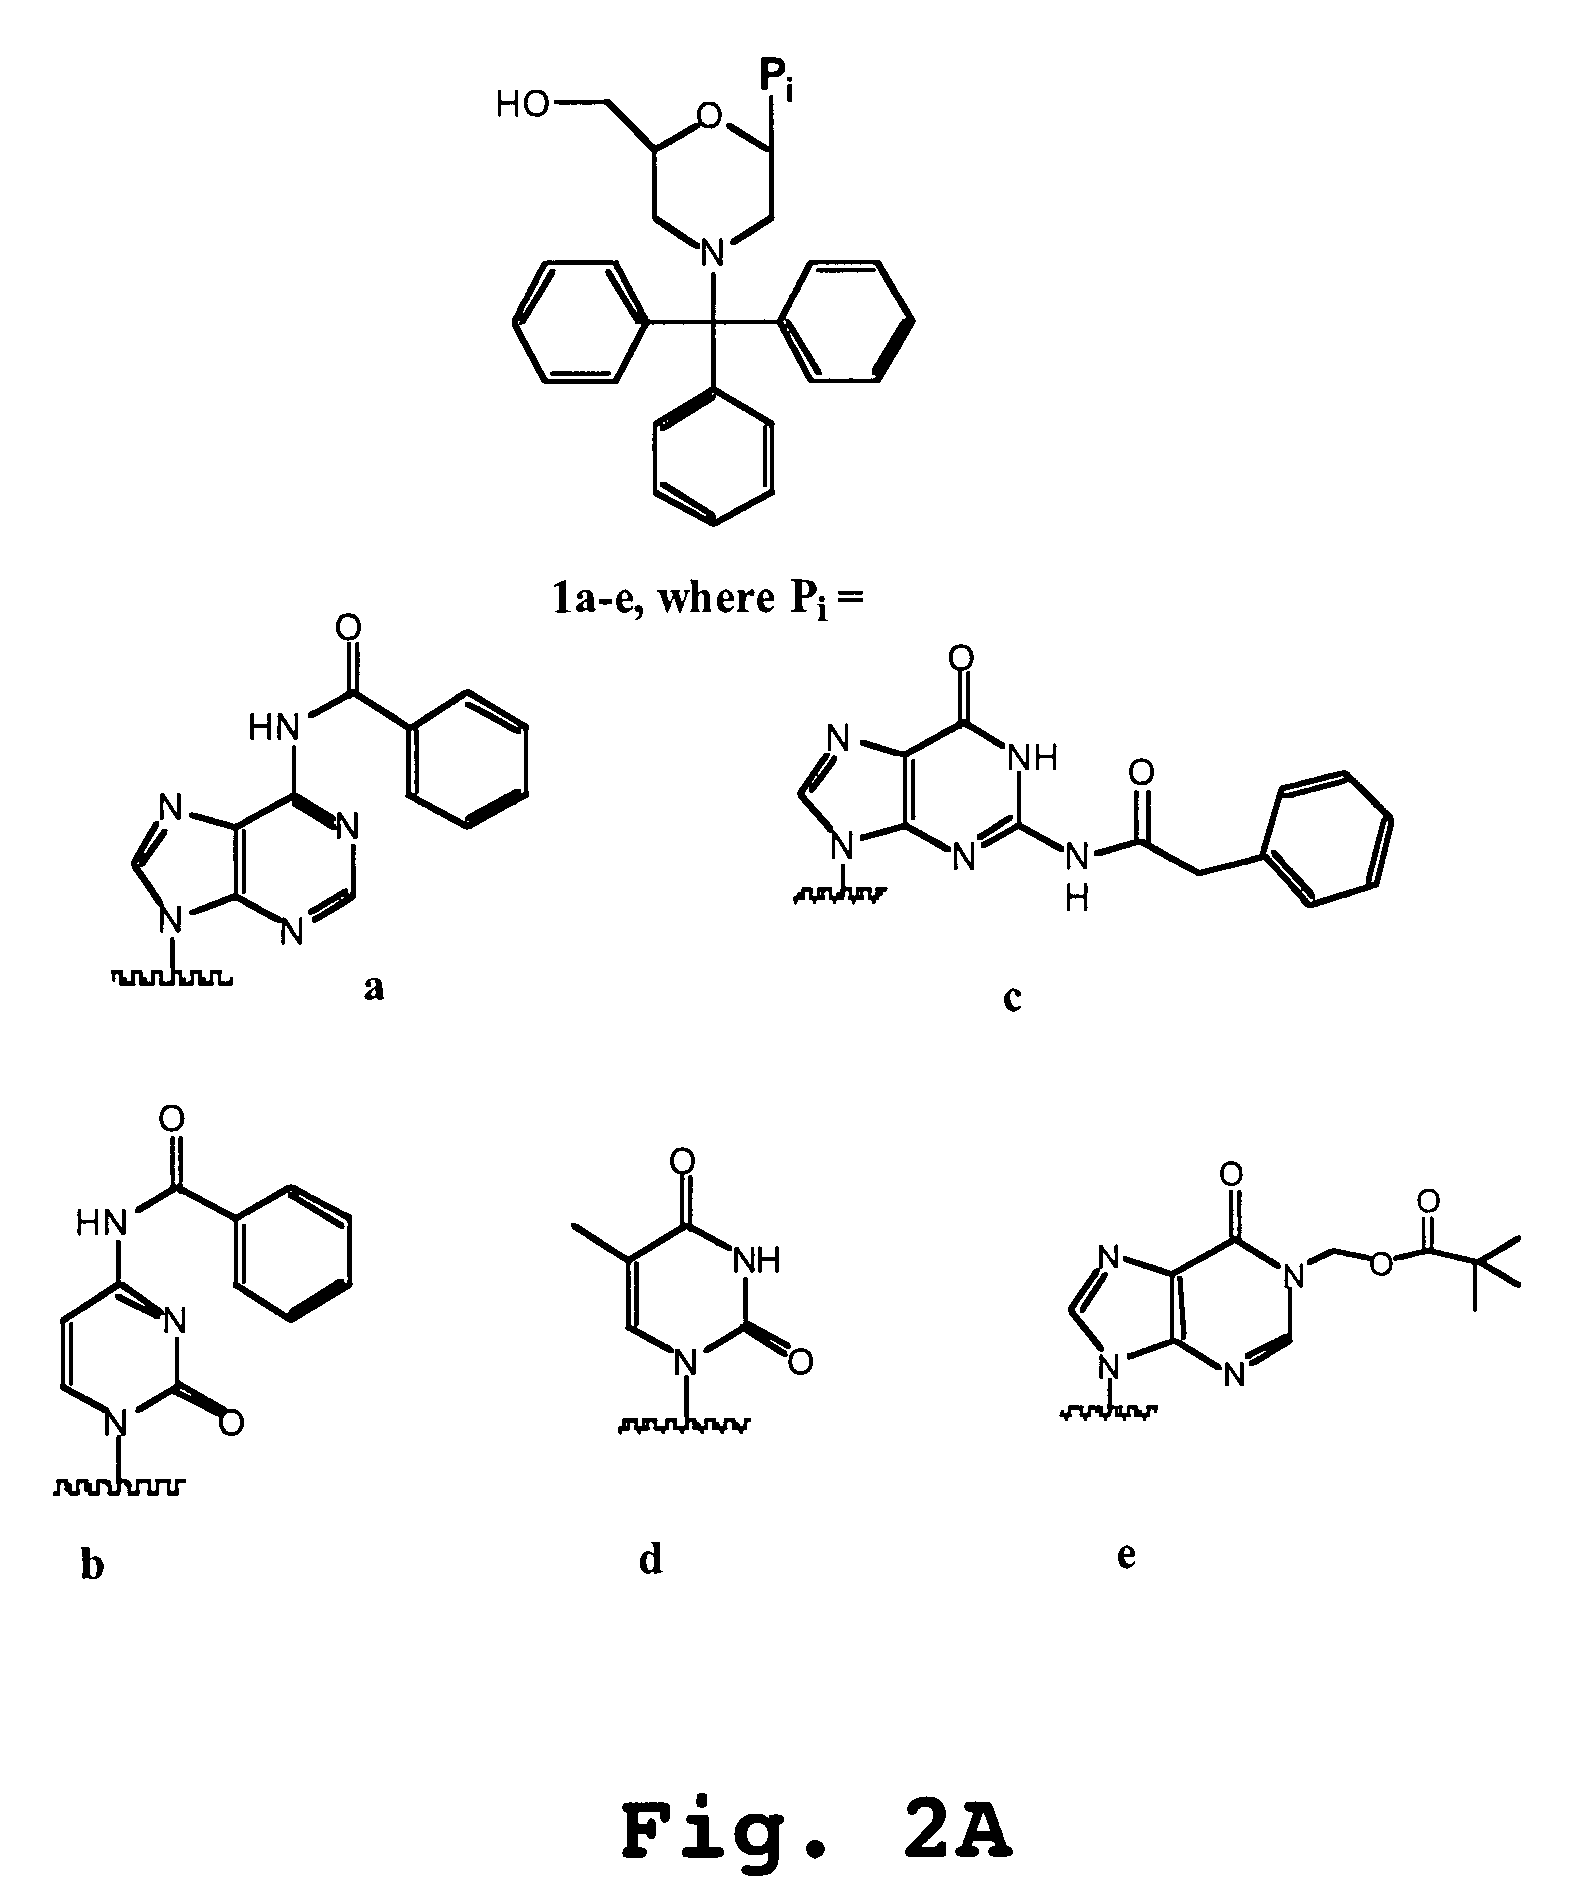 Oligonucleotide analogs having cationic intersubunit linkages